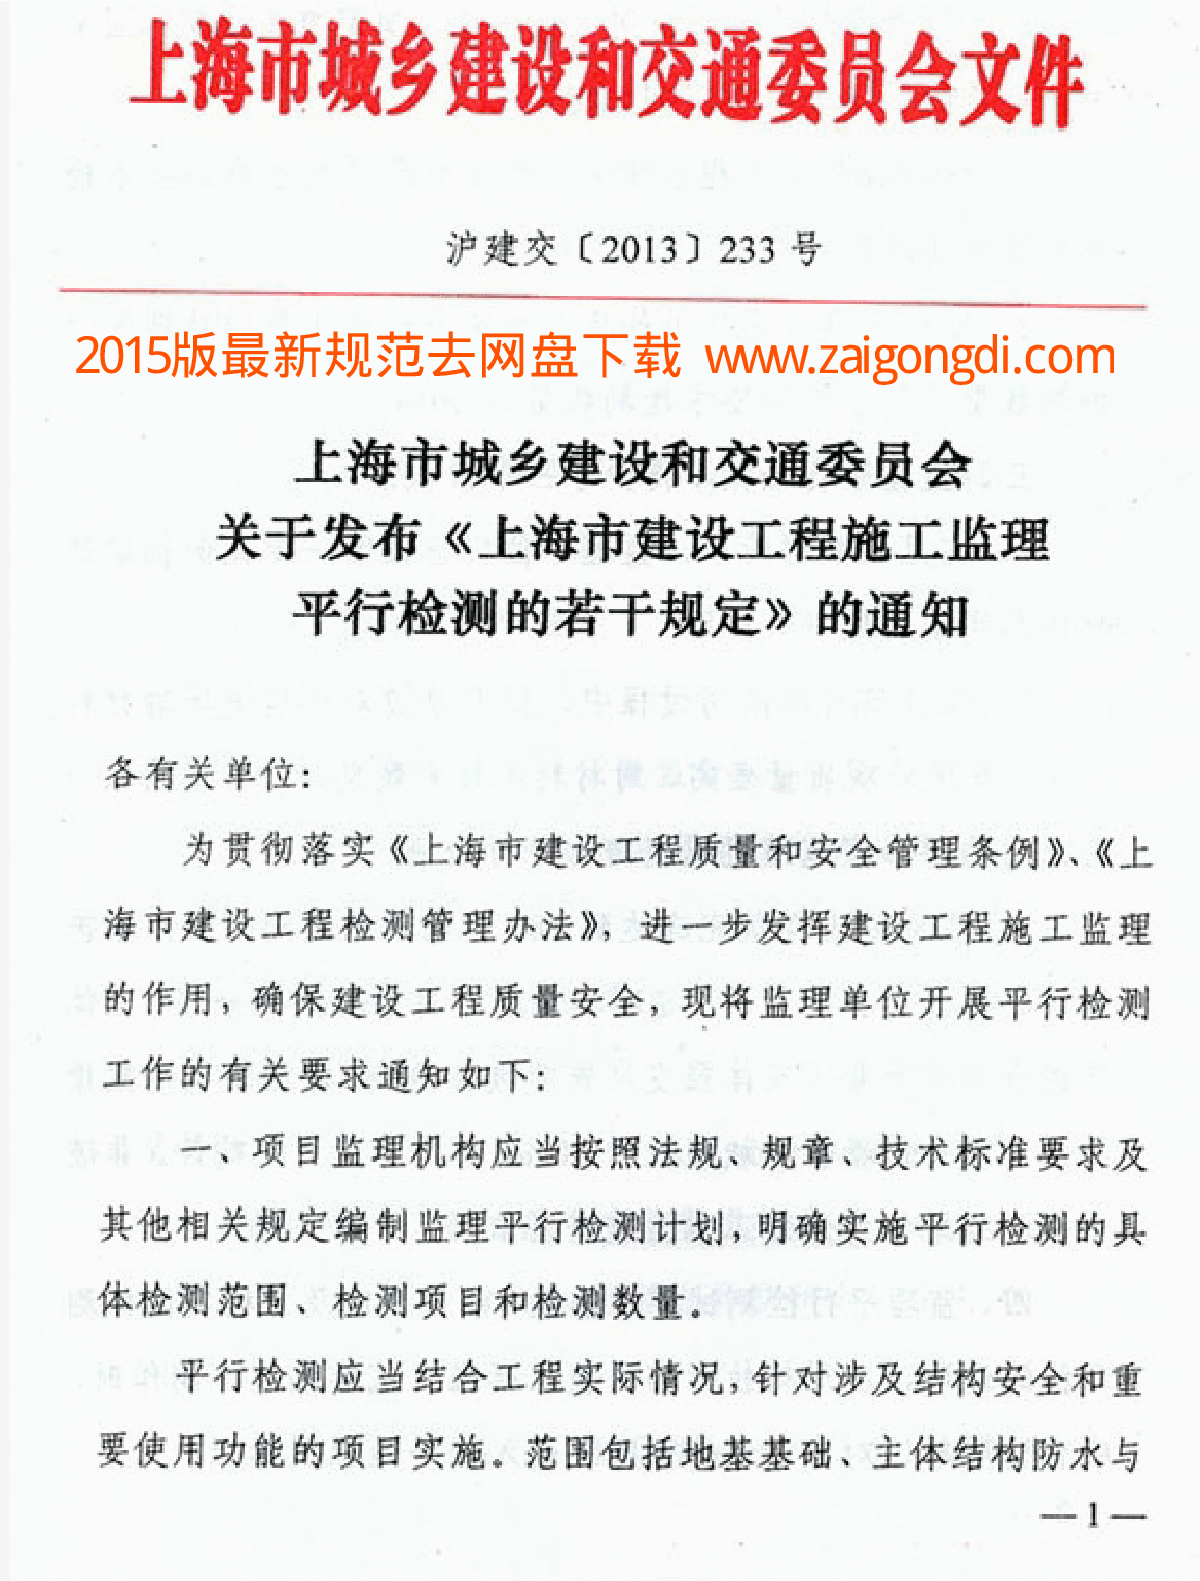 上海市城乡建设和交通委员会文件沪建交〔2013〕233号